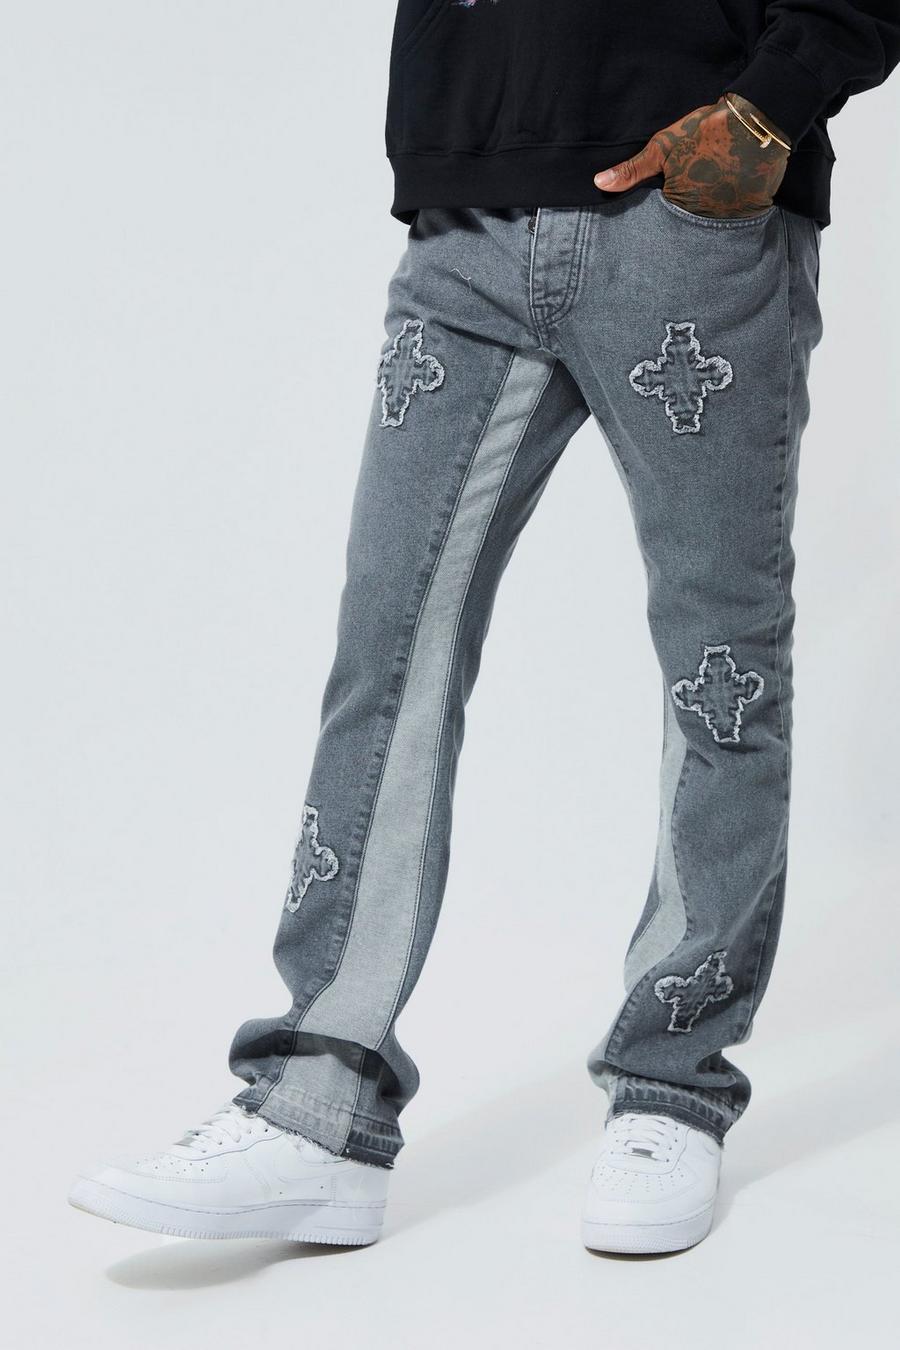 אפור ביניים ג'ינס מתרחב בגזרה צרה מבד קשיח עם פאנלים